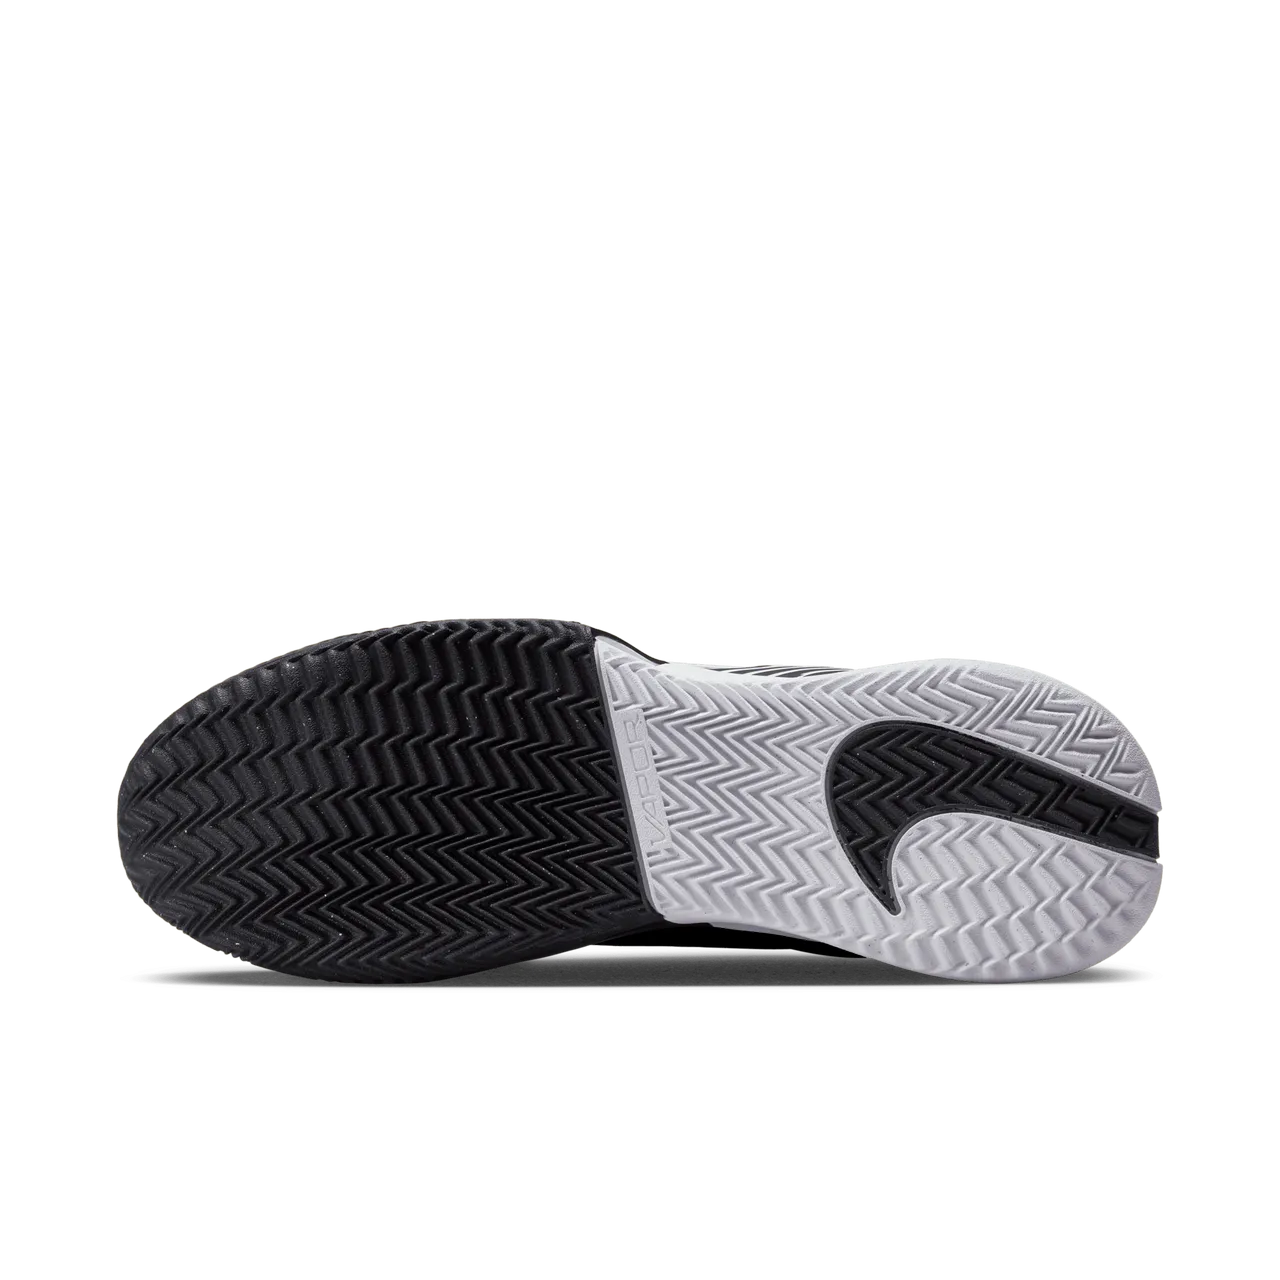 NikeCourt Air Zoom Vapor Pro 2 Tennisschoenen voor heren (gravel) - Zwart